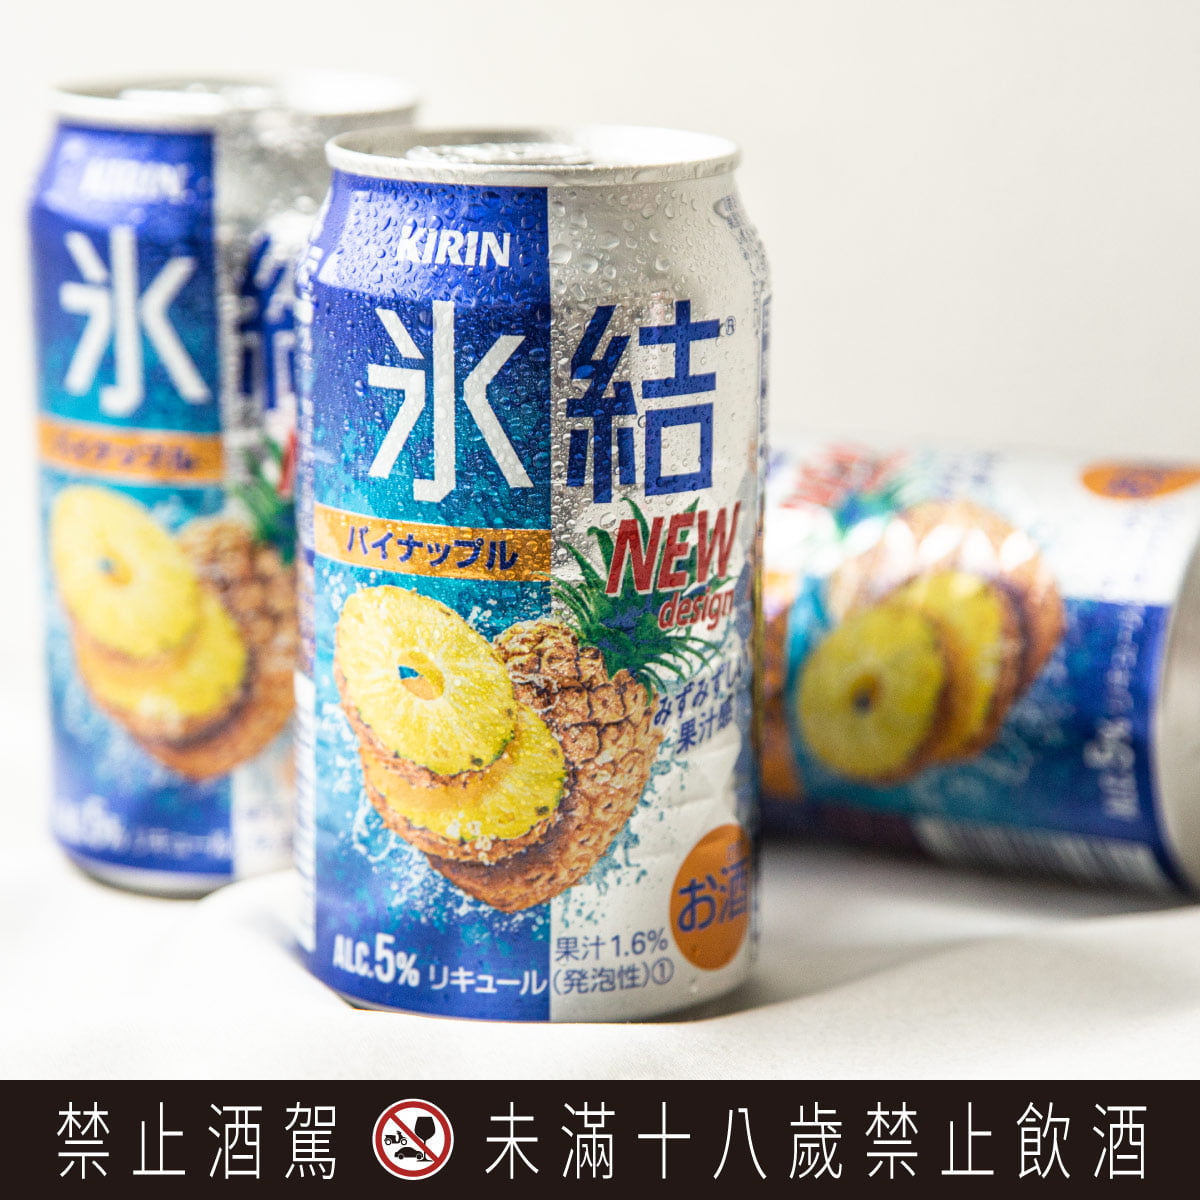 新聞圖片二：KIRIN「冰結鳳梨」酒精濃度5，完整保留鳳梨的濃郁香氛及鮮甜口感，適合與家人一同共度微醺幸福時光。